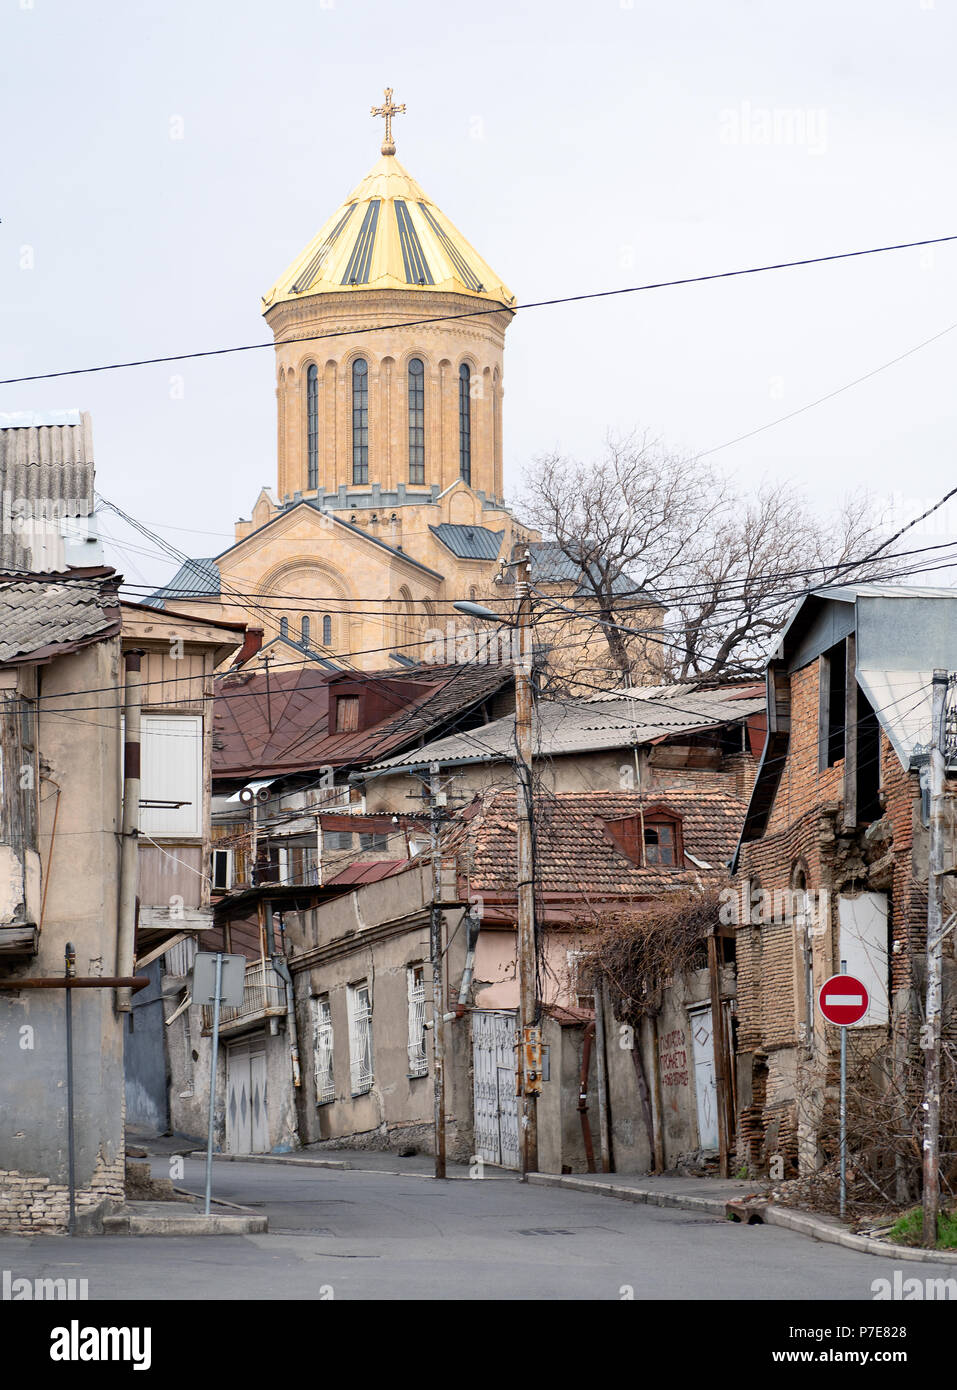 Tbilisi street scene : Santa Trinità cattedrale dietro la vecchia casa in rovina Foto Stock